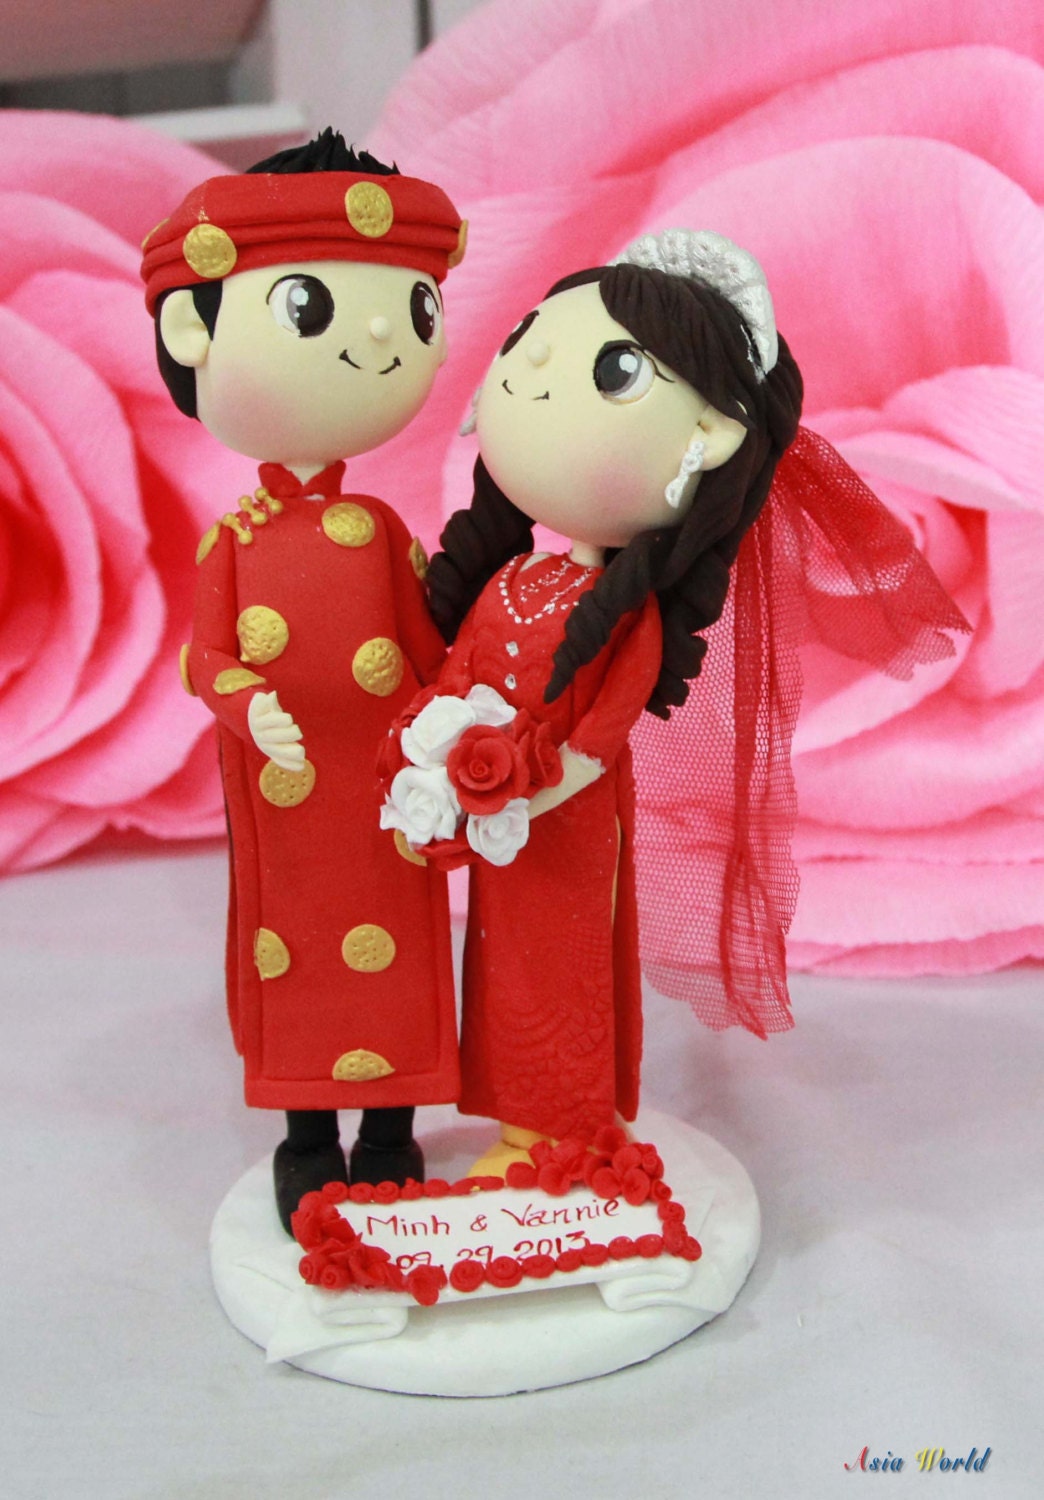 Miniature wedding cakes las vegas